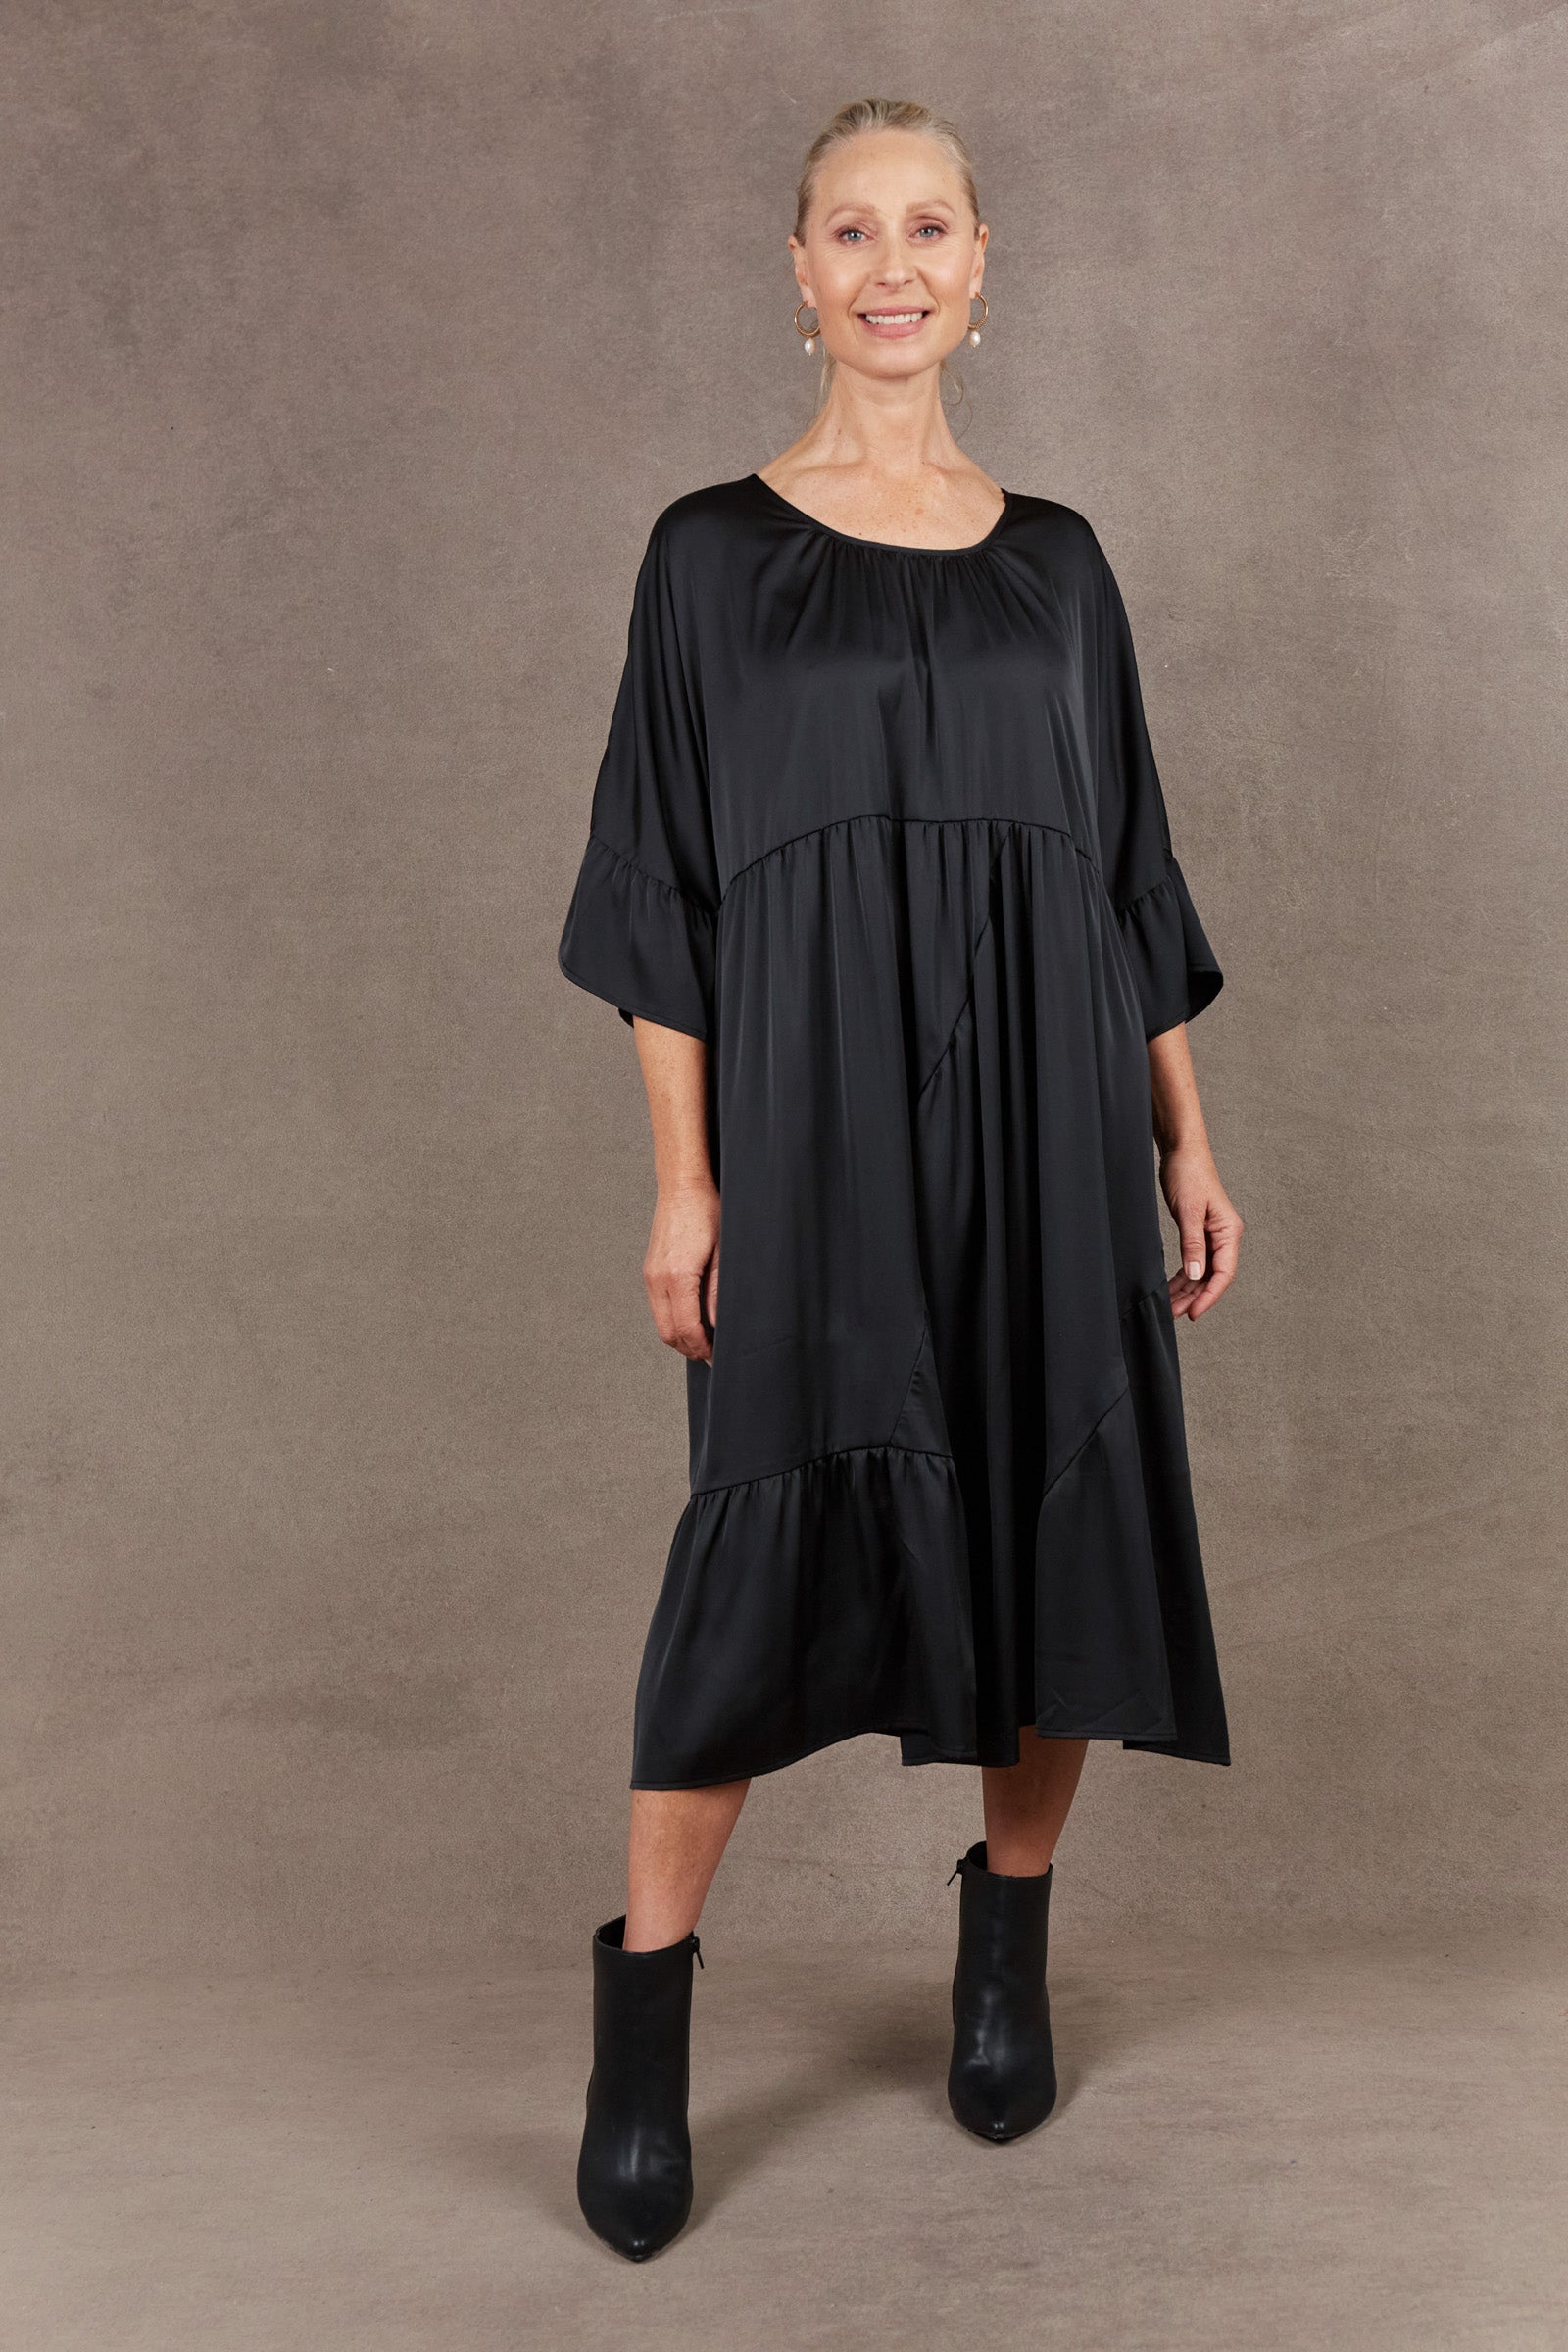 Norse Reversible Dress - Ebony - eb&ive Clothing - Dress Maxi One Size